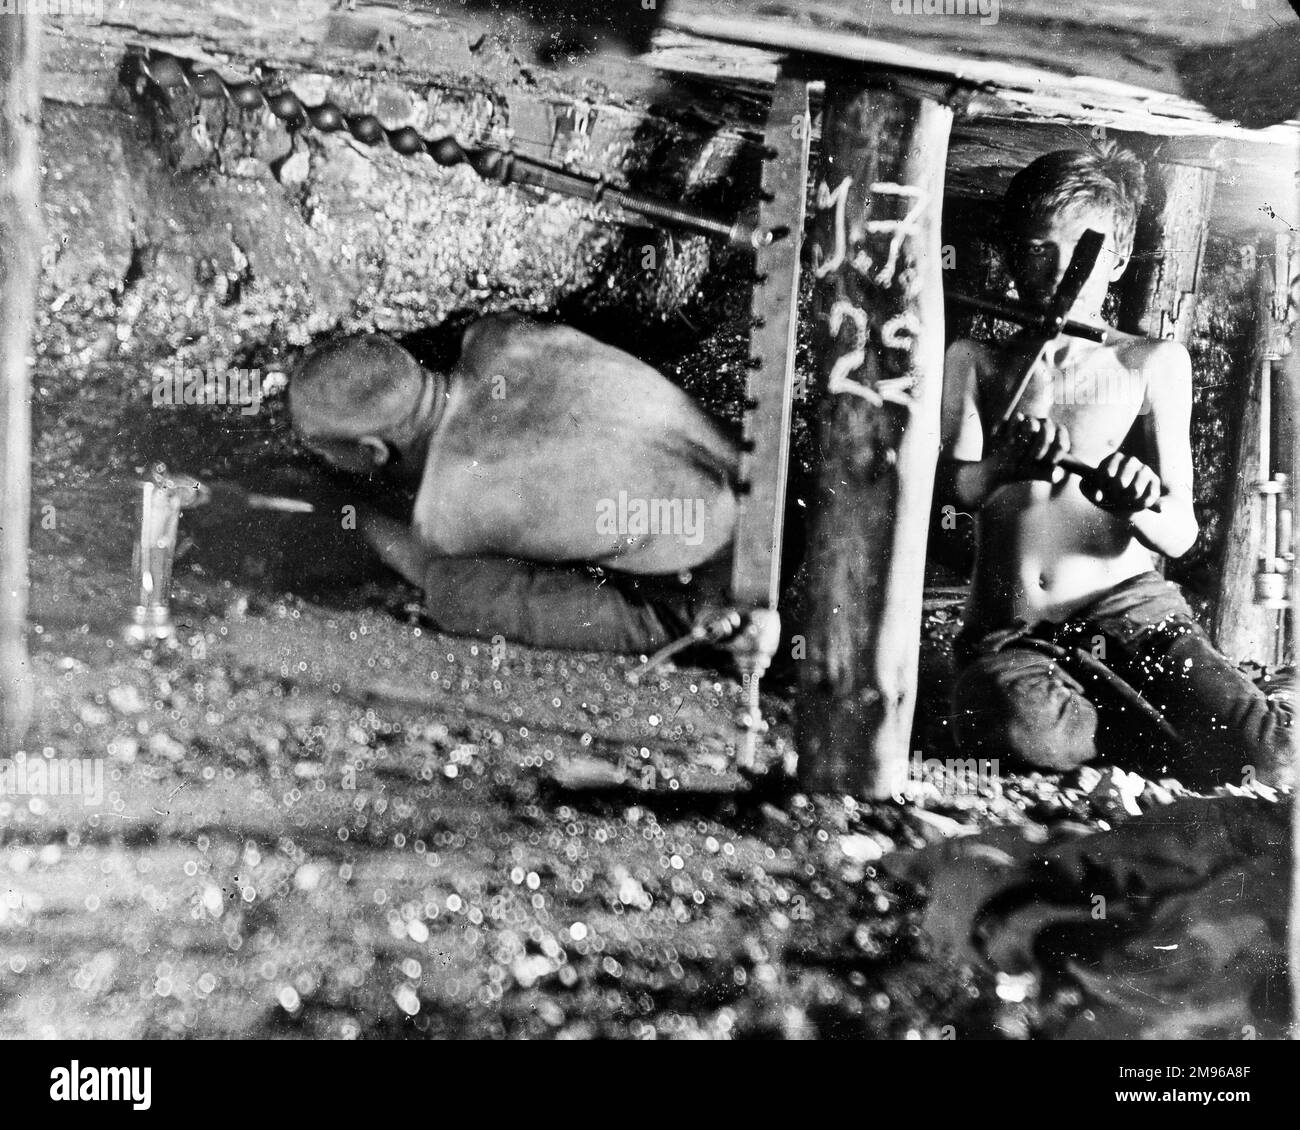 Deux mineurs, dont un très jeune, travaillent dans une étroite veine de charbon dans une mine du sud du pays de Galles. Banque D'Images